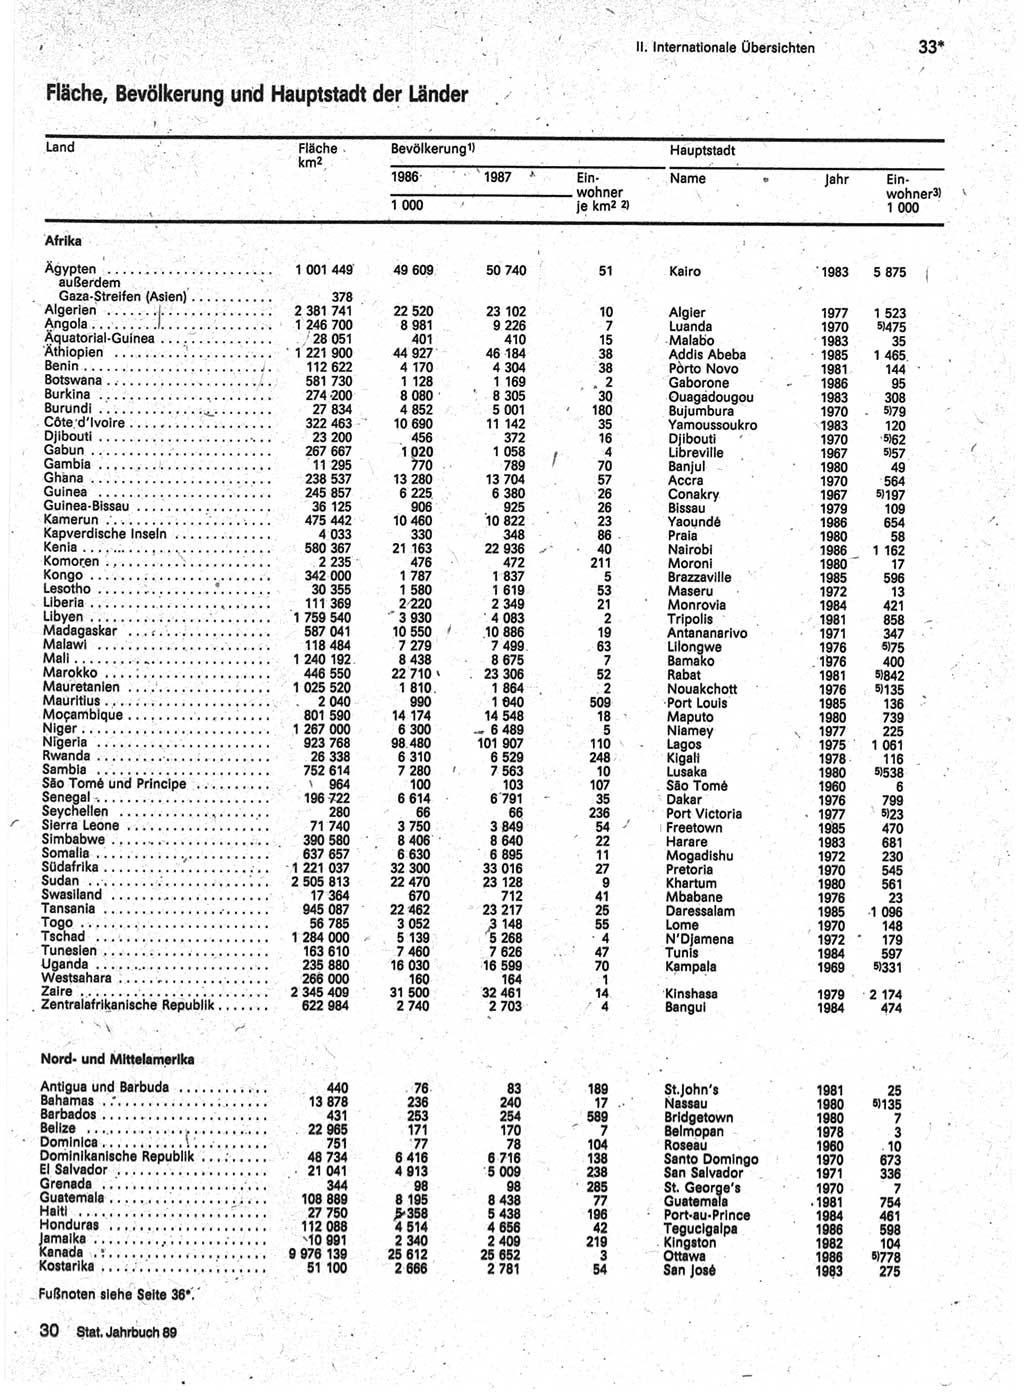 Statistisches Jahrbuch der Deutschen Demokratischen Republik (DDR) 1989, Seite 33 (Stat. Jb. DDR 1989, S. 33)